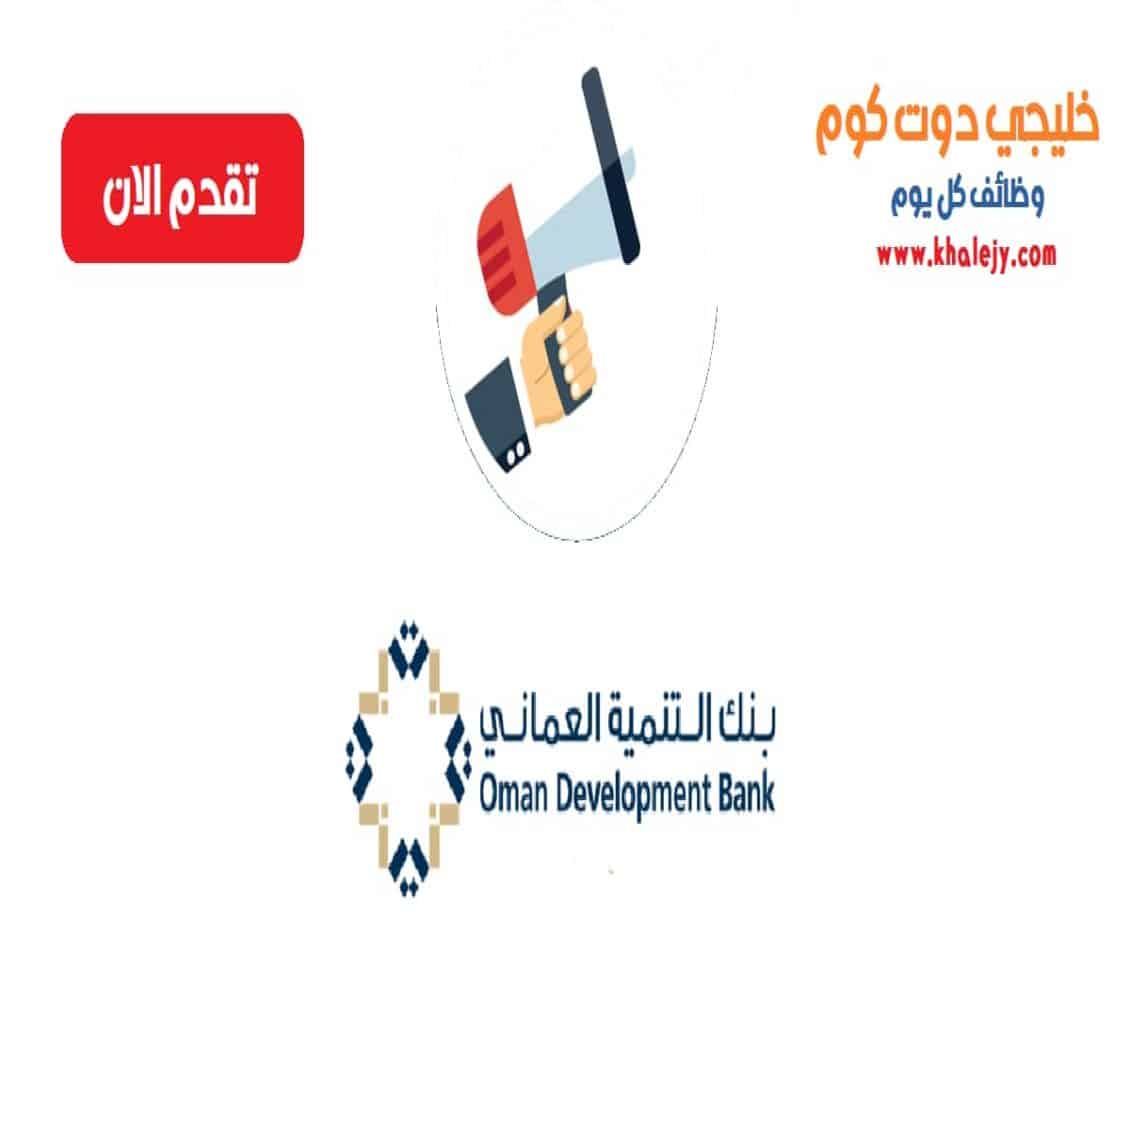 وظائف بنك التنمية العماني في سلطنة عمان